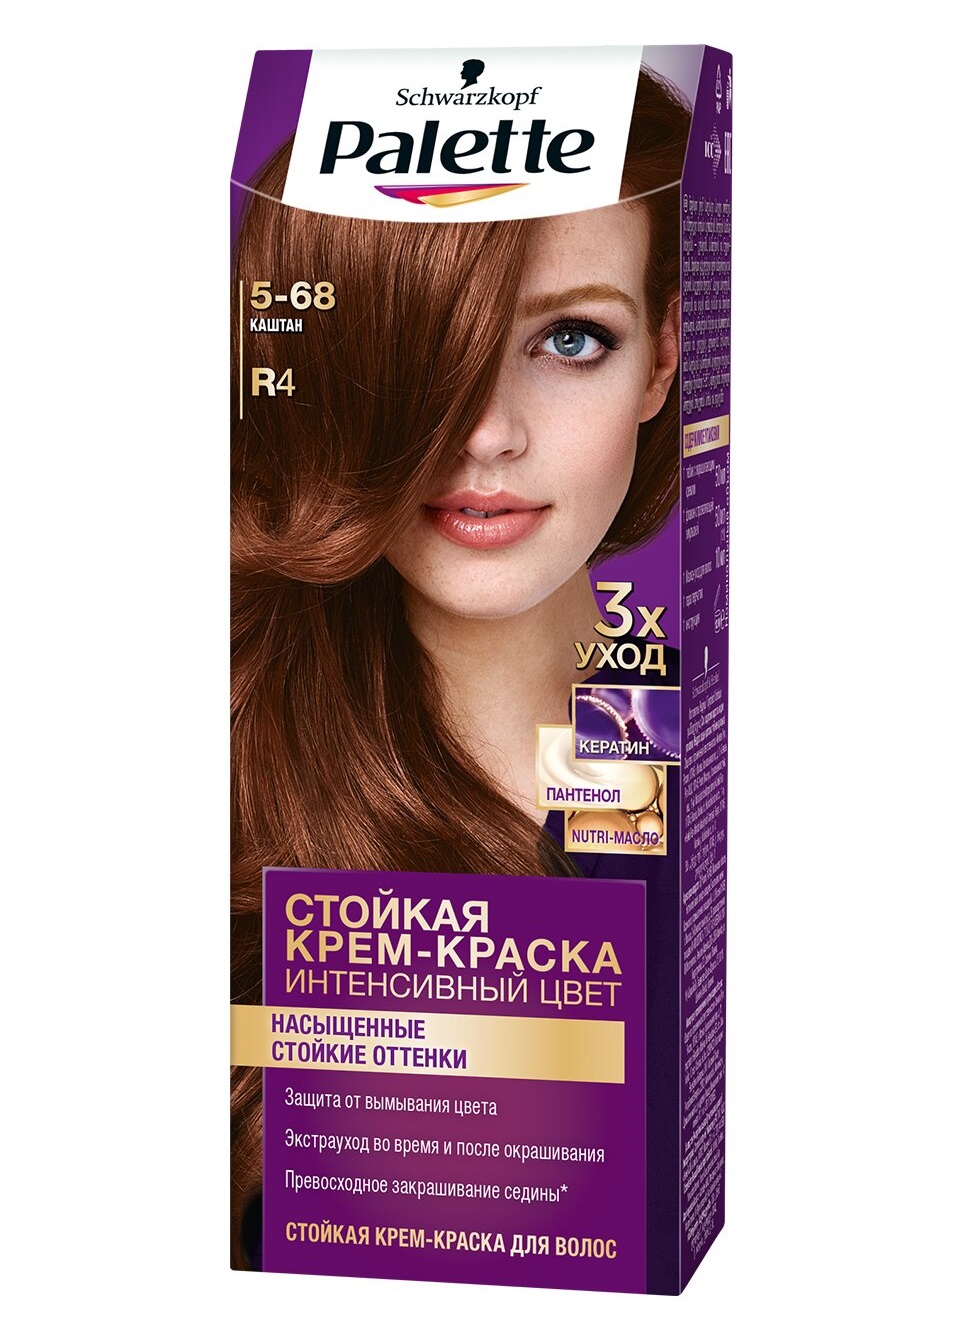 Крем-краска для волос Palette Интенсивный цвет 5-68 R4 Каштан 110 мл краска для волос wella professionals koleston perfect 77 0 блонд интенсивный 60 мл